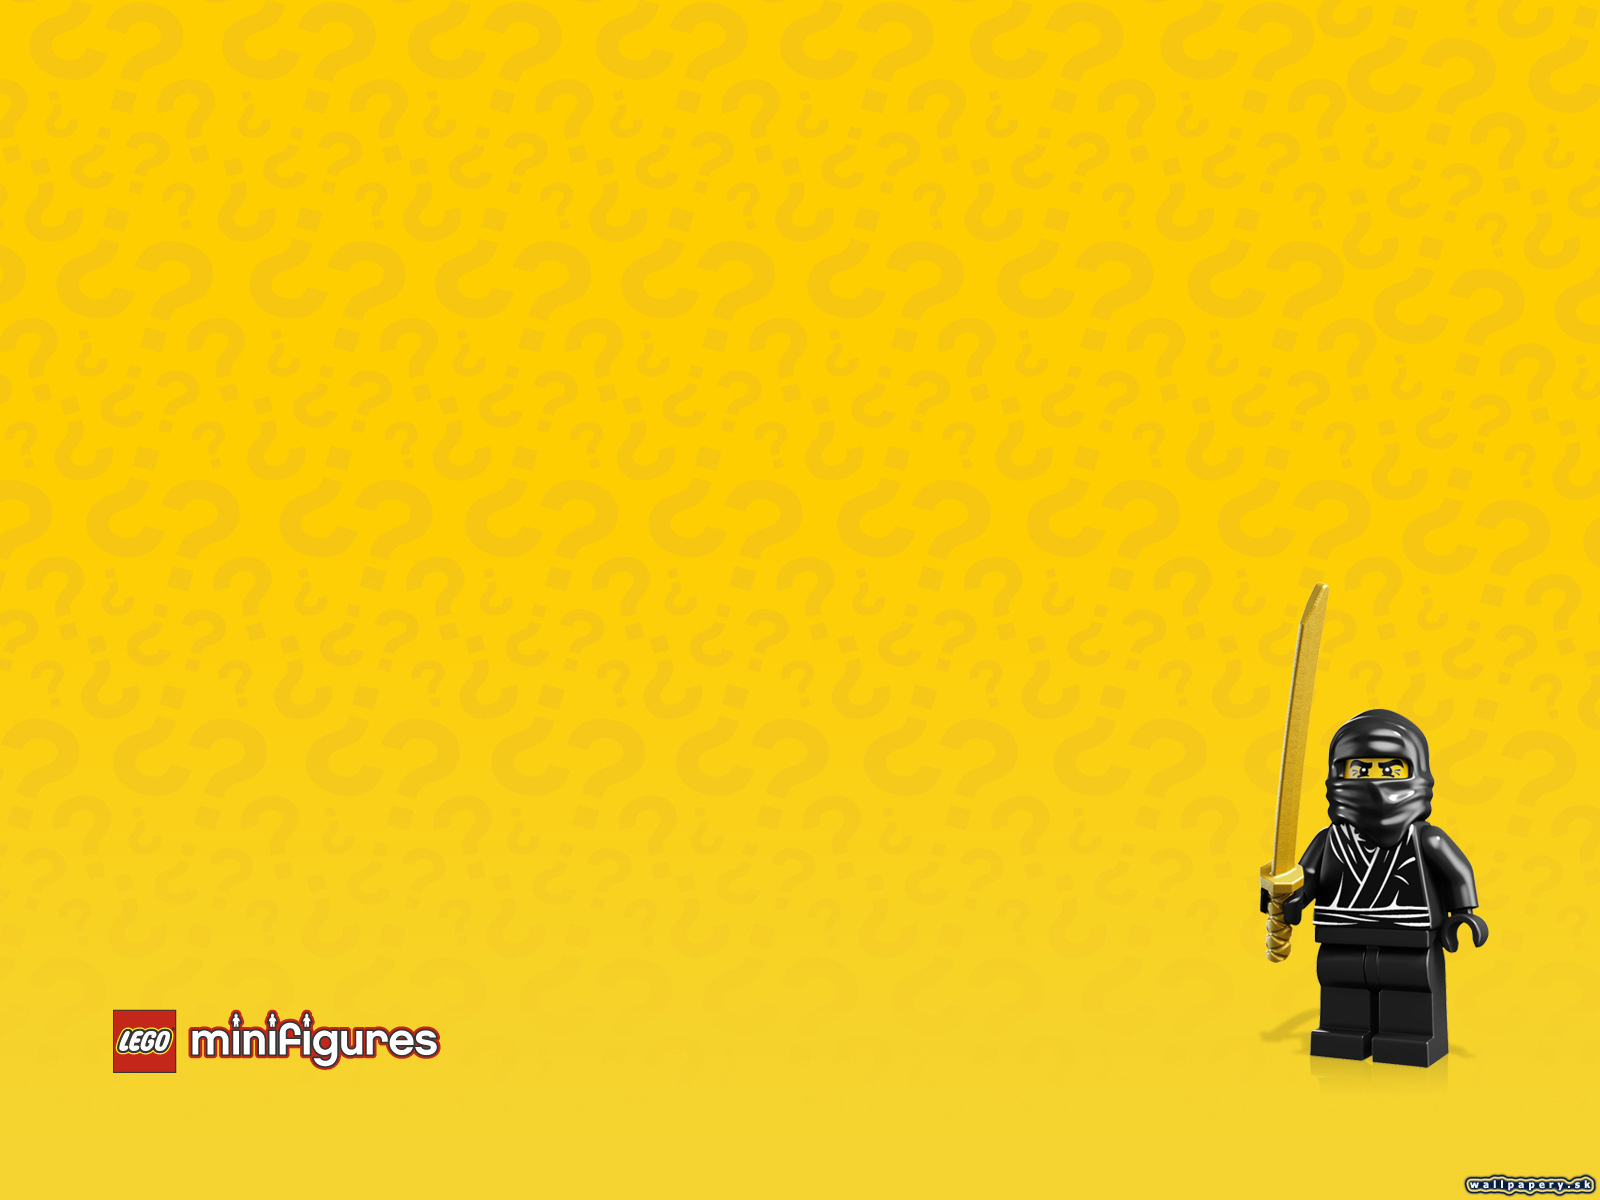 LEGO Minifigures Online - wallpaper 36